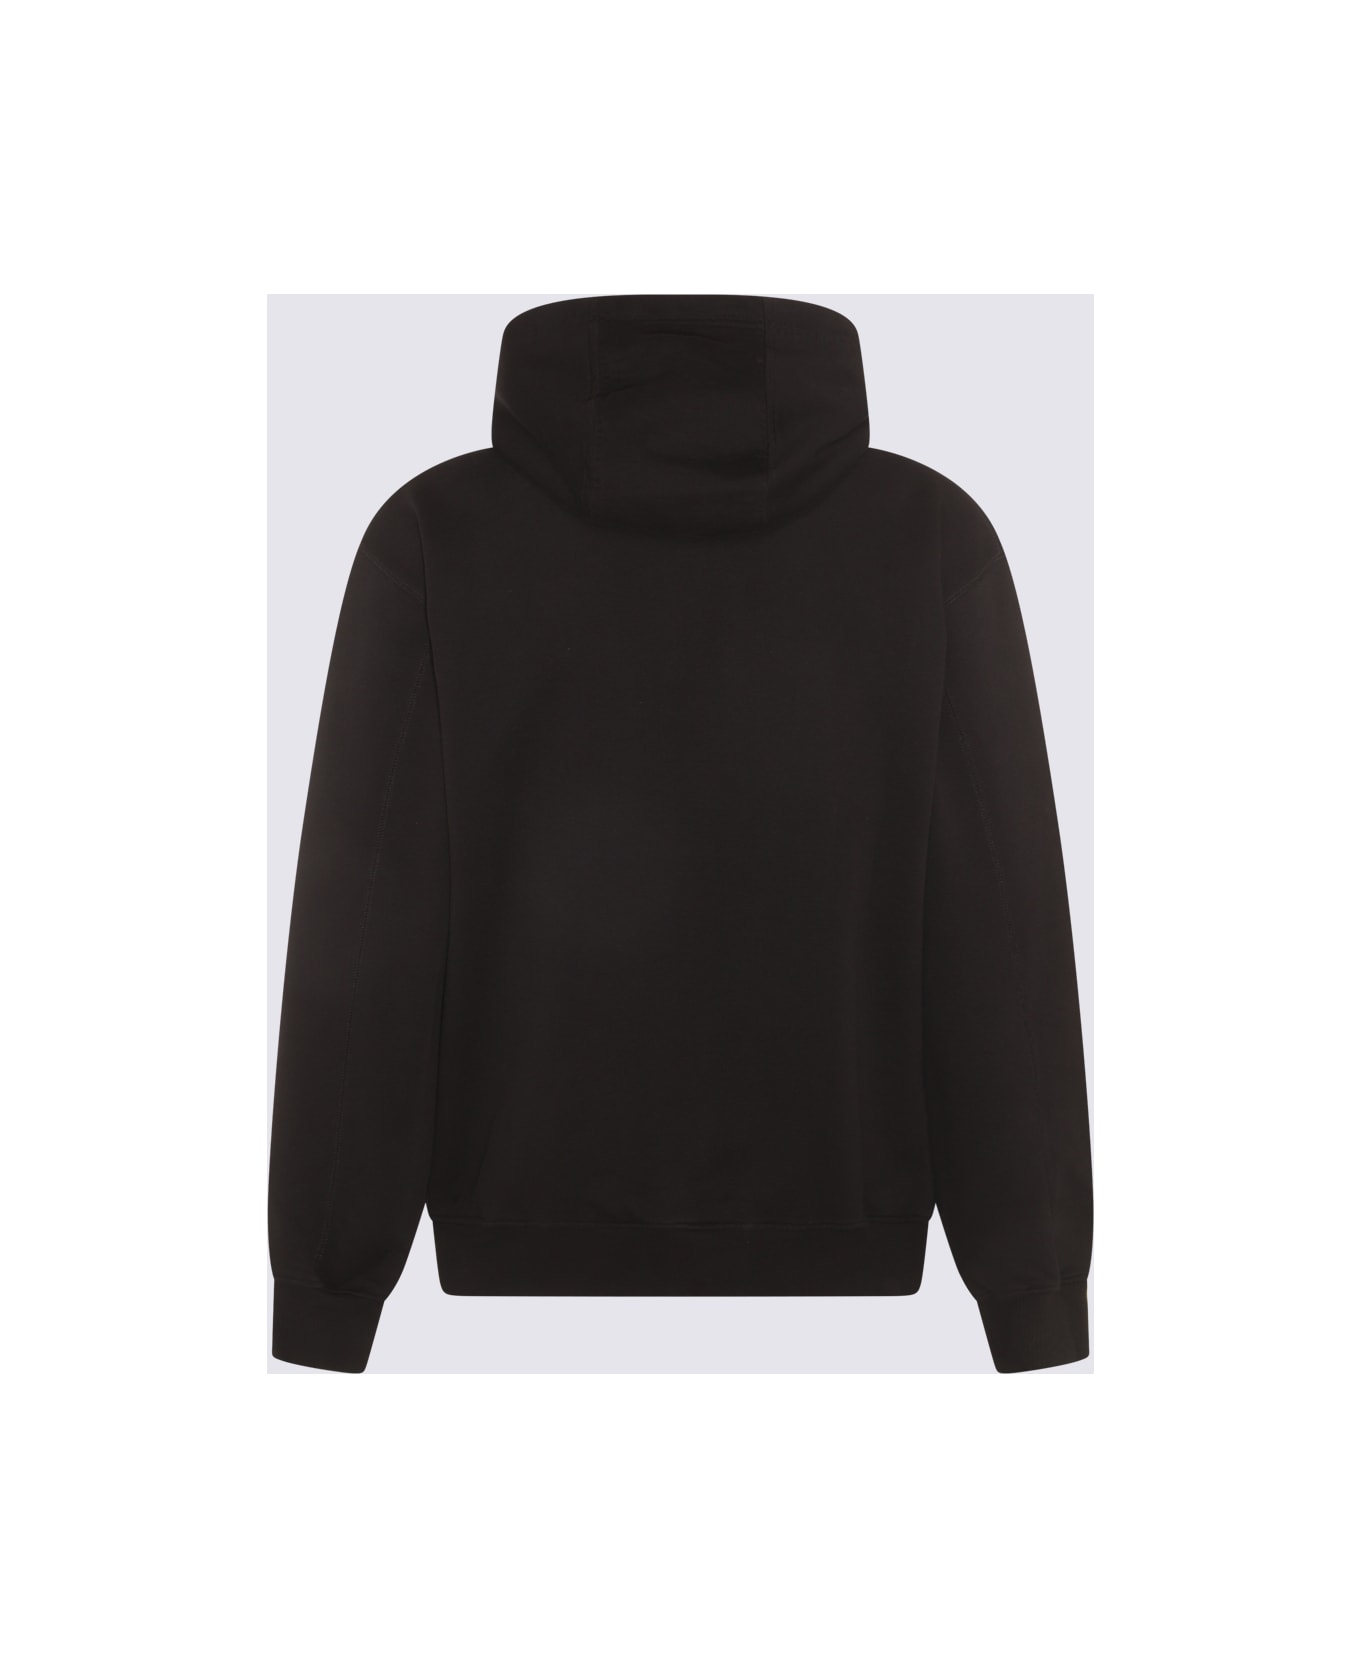 Casablanca Black Cotton Sweatshirt - Black